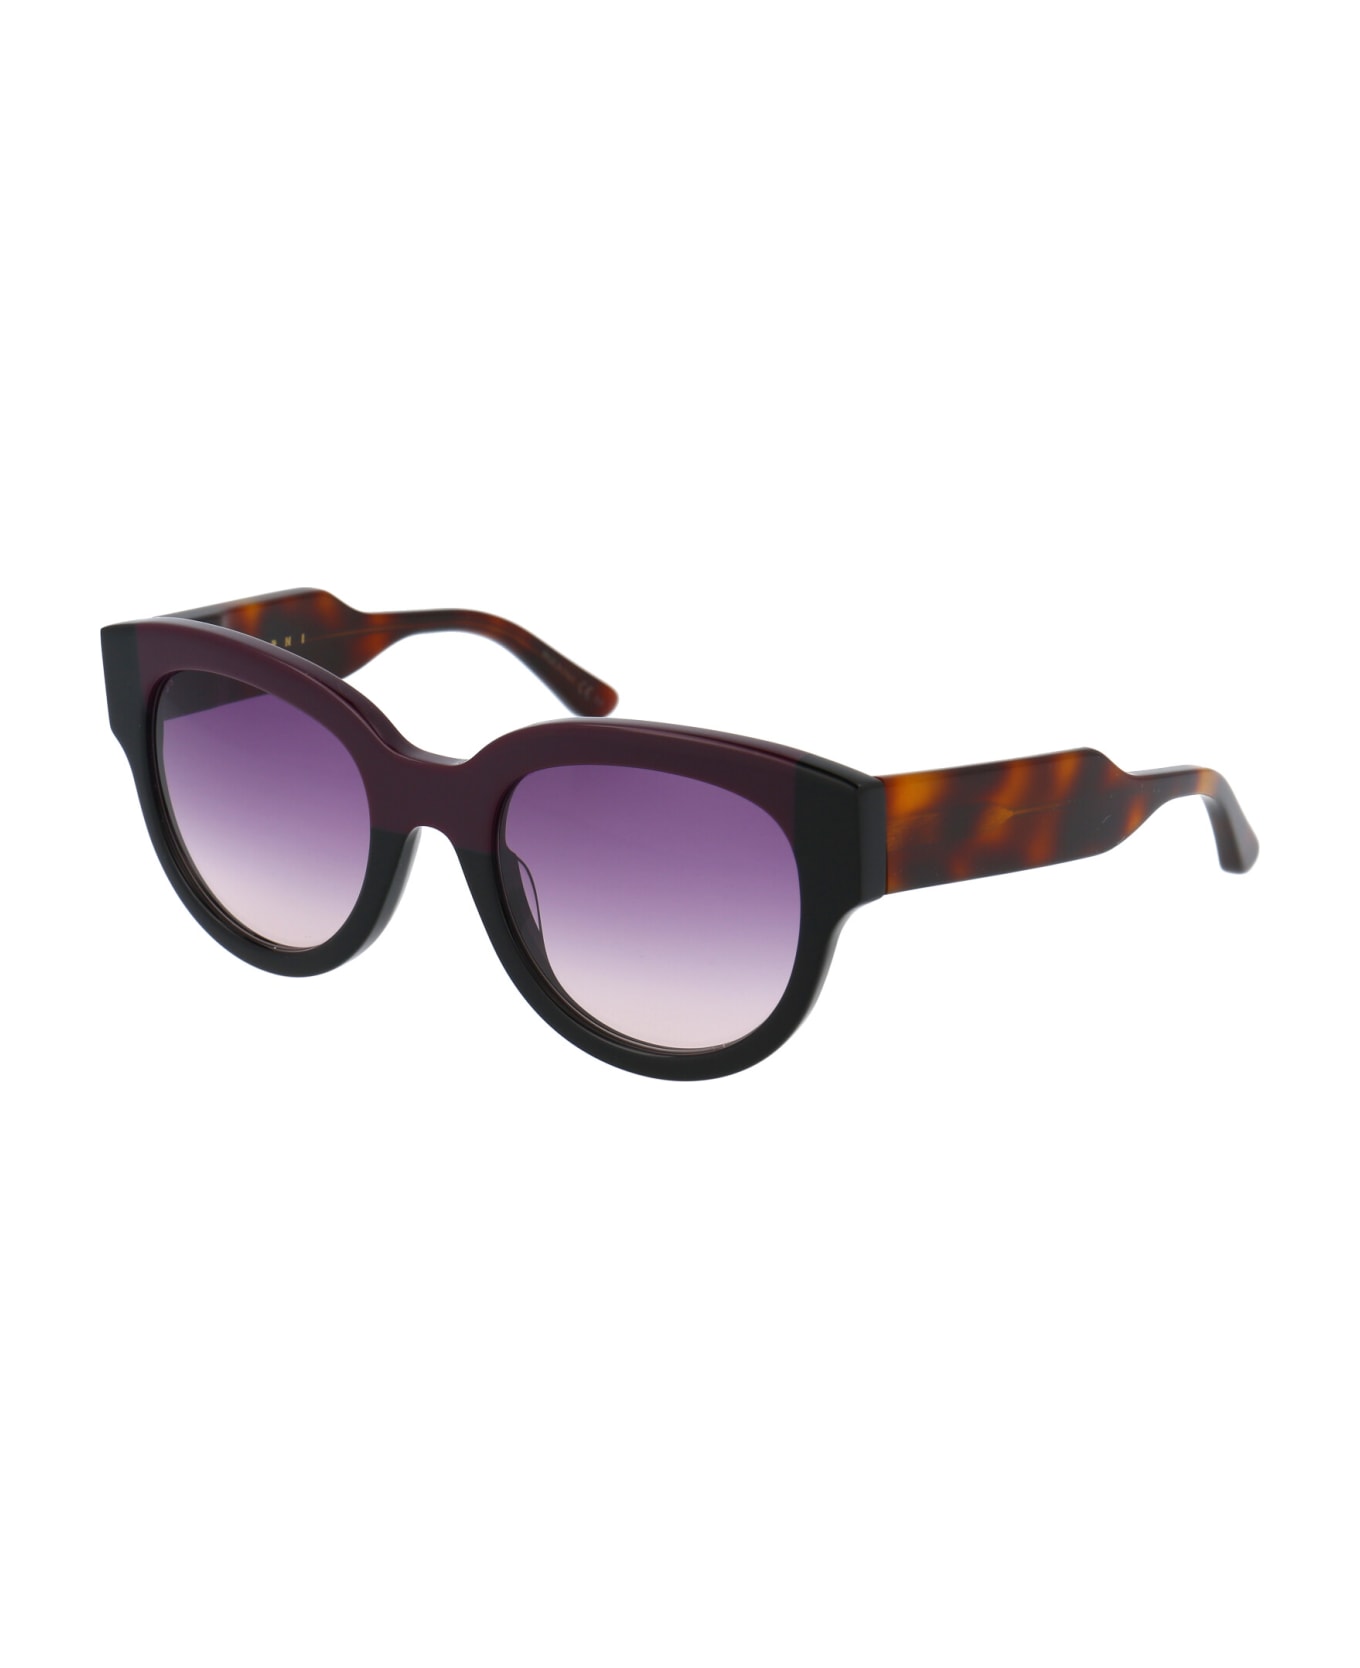 Marni Eyewear Me600s Sunglasses - 600 WINE BLACK